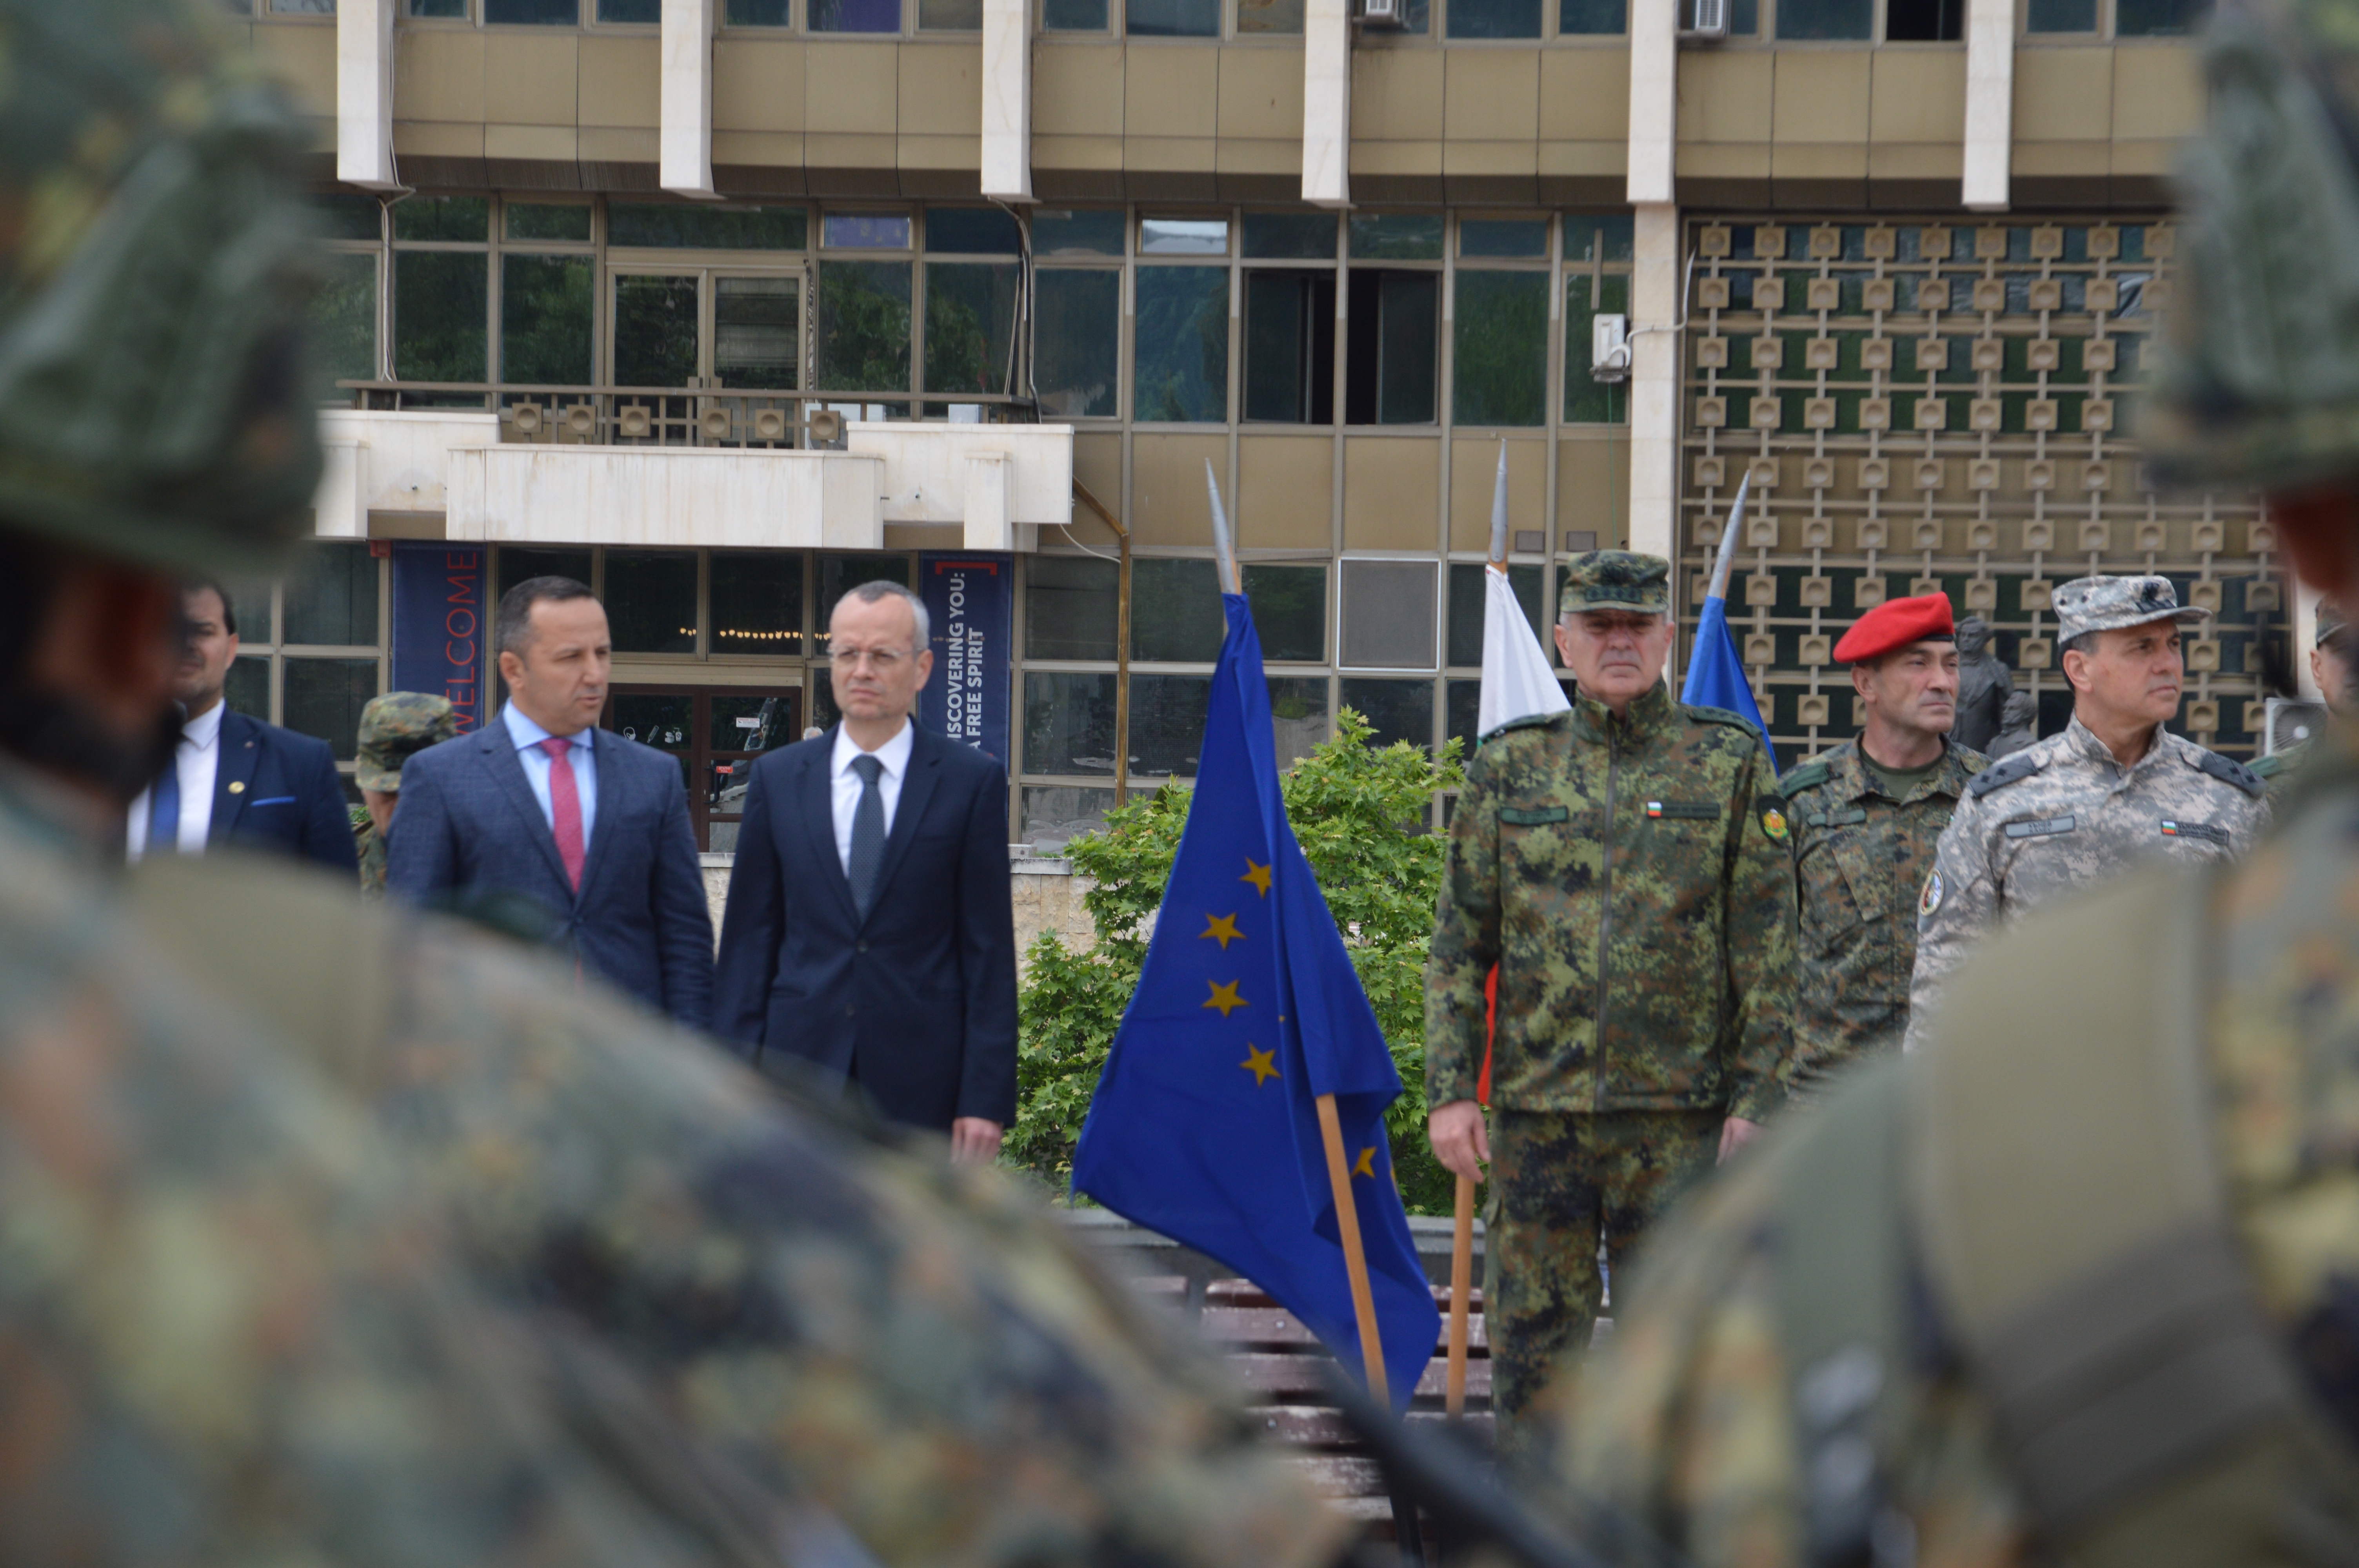 Благоевград изпрати над 100 военнослужещи на мисия на НАТО в Косово,  кметът Методи Байкушев: Въпросът за сигурността на Косово е ключов, Вашият дълг е да пазите демокрацията и мира в региона